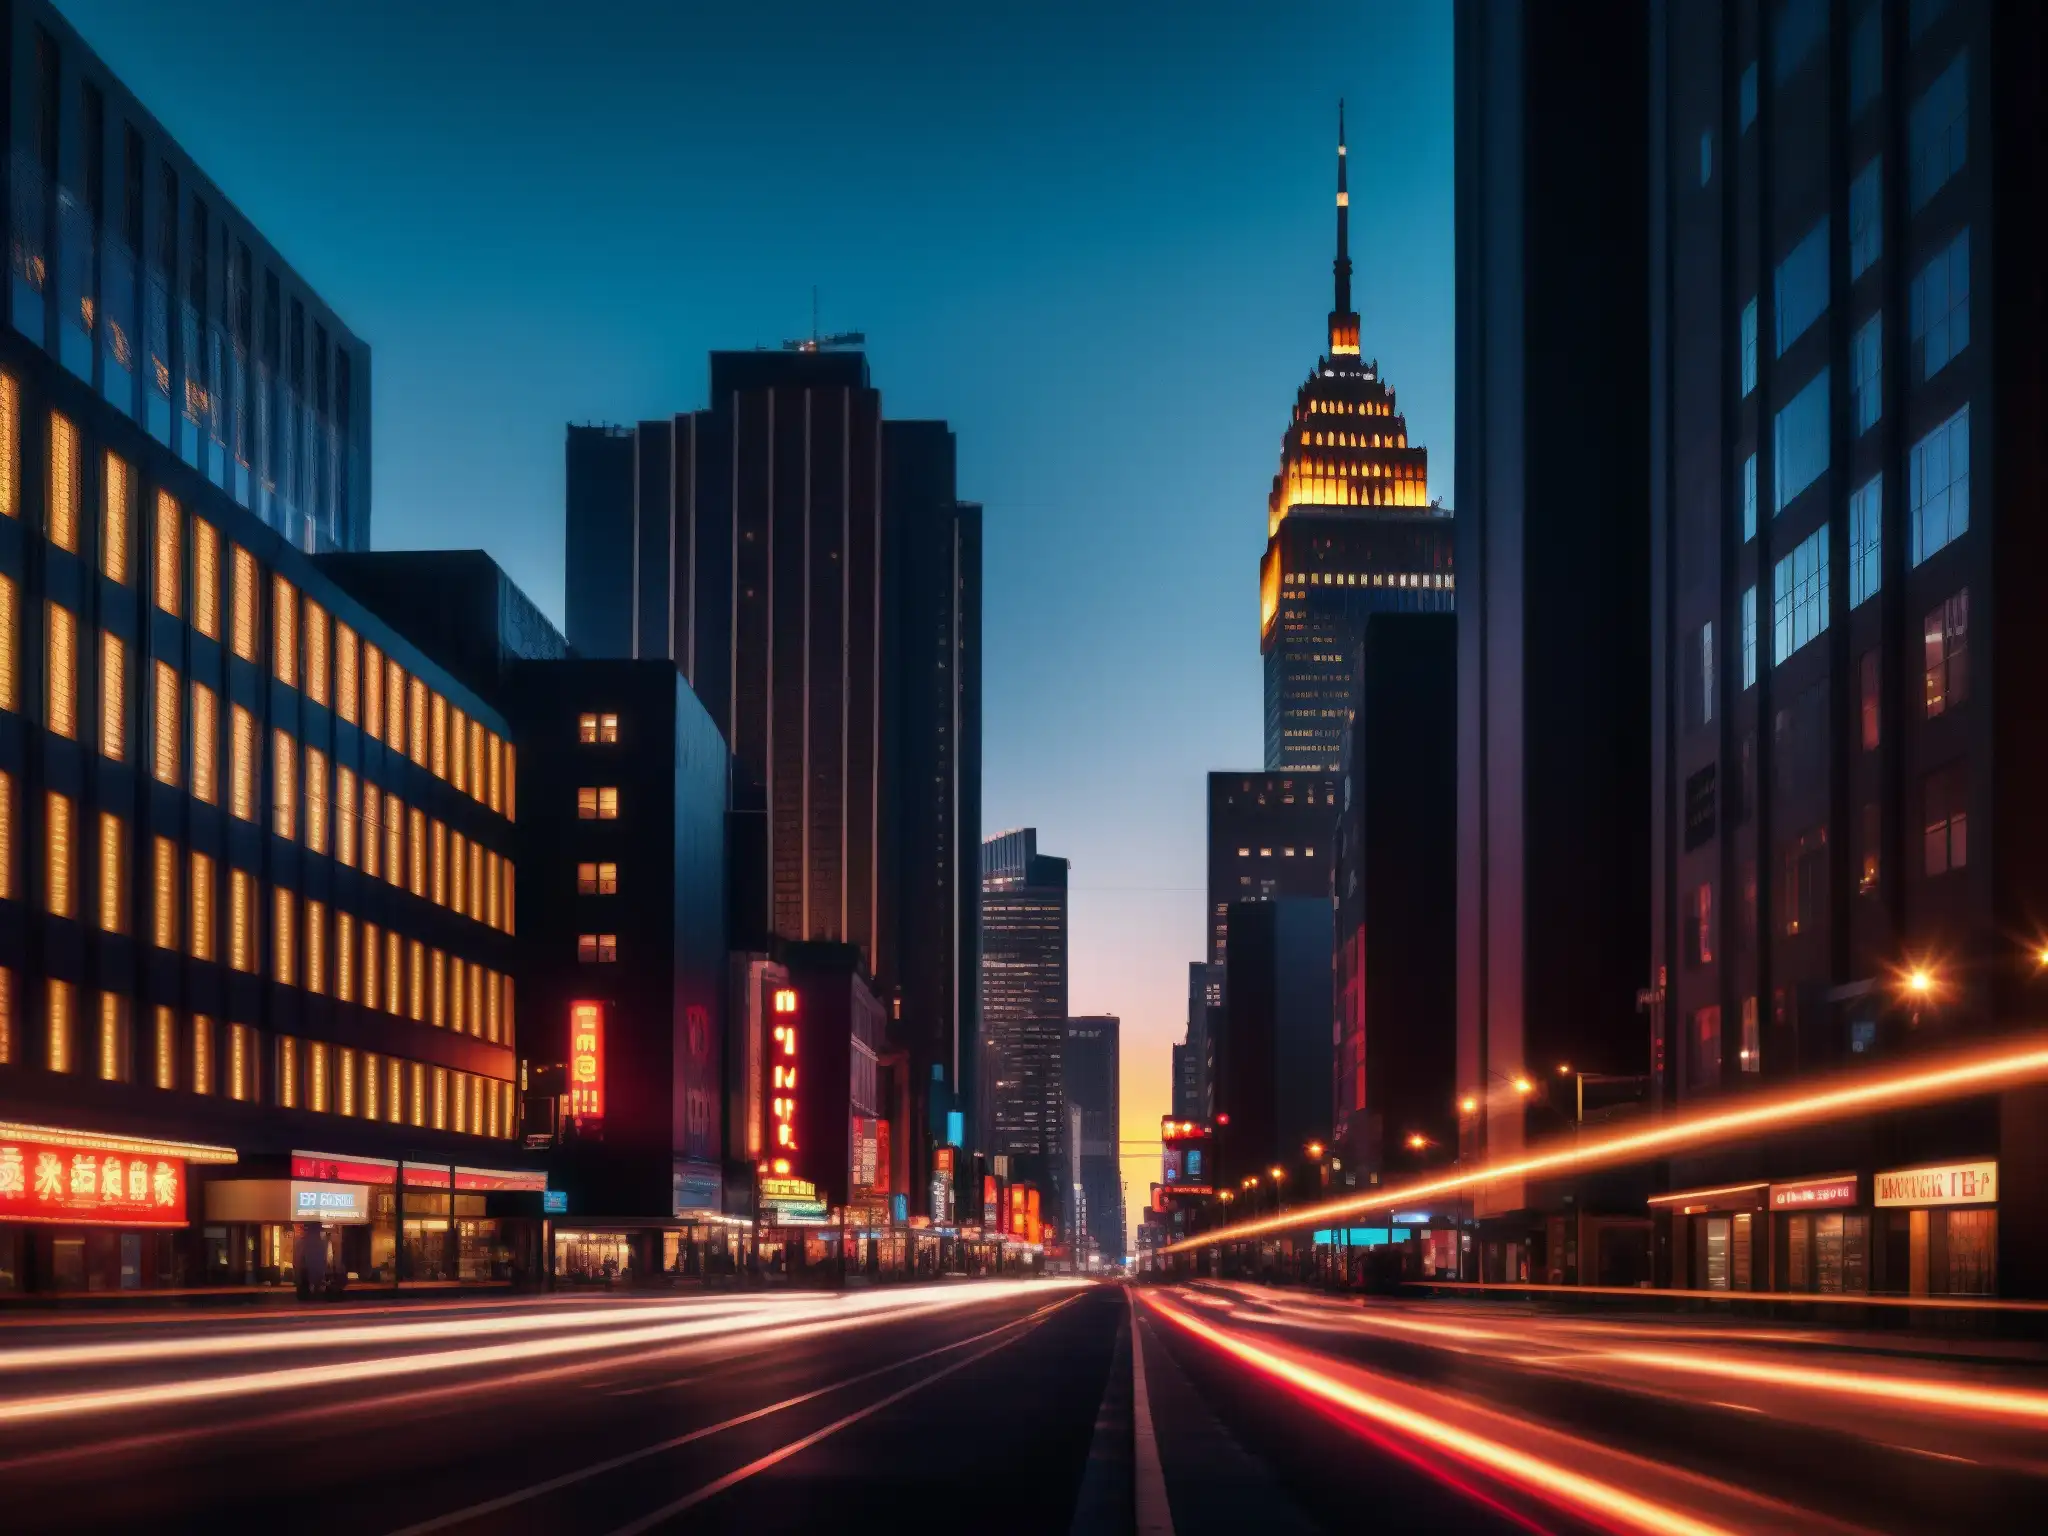 Un paisaje urbano nocturno con edificios altos y luces de neón, evocando el fenómeno leyendas urbanas digitales